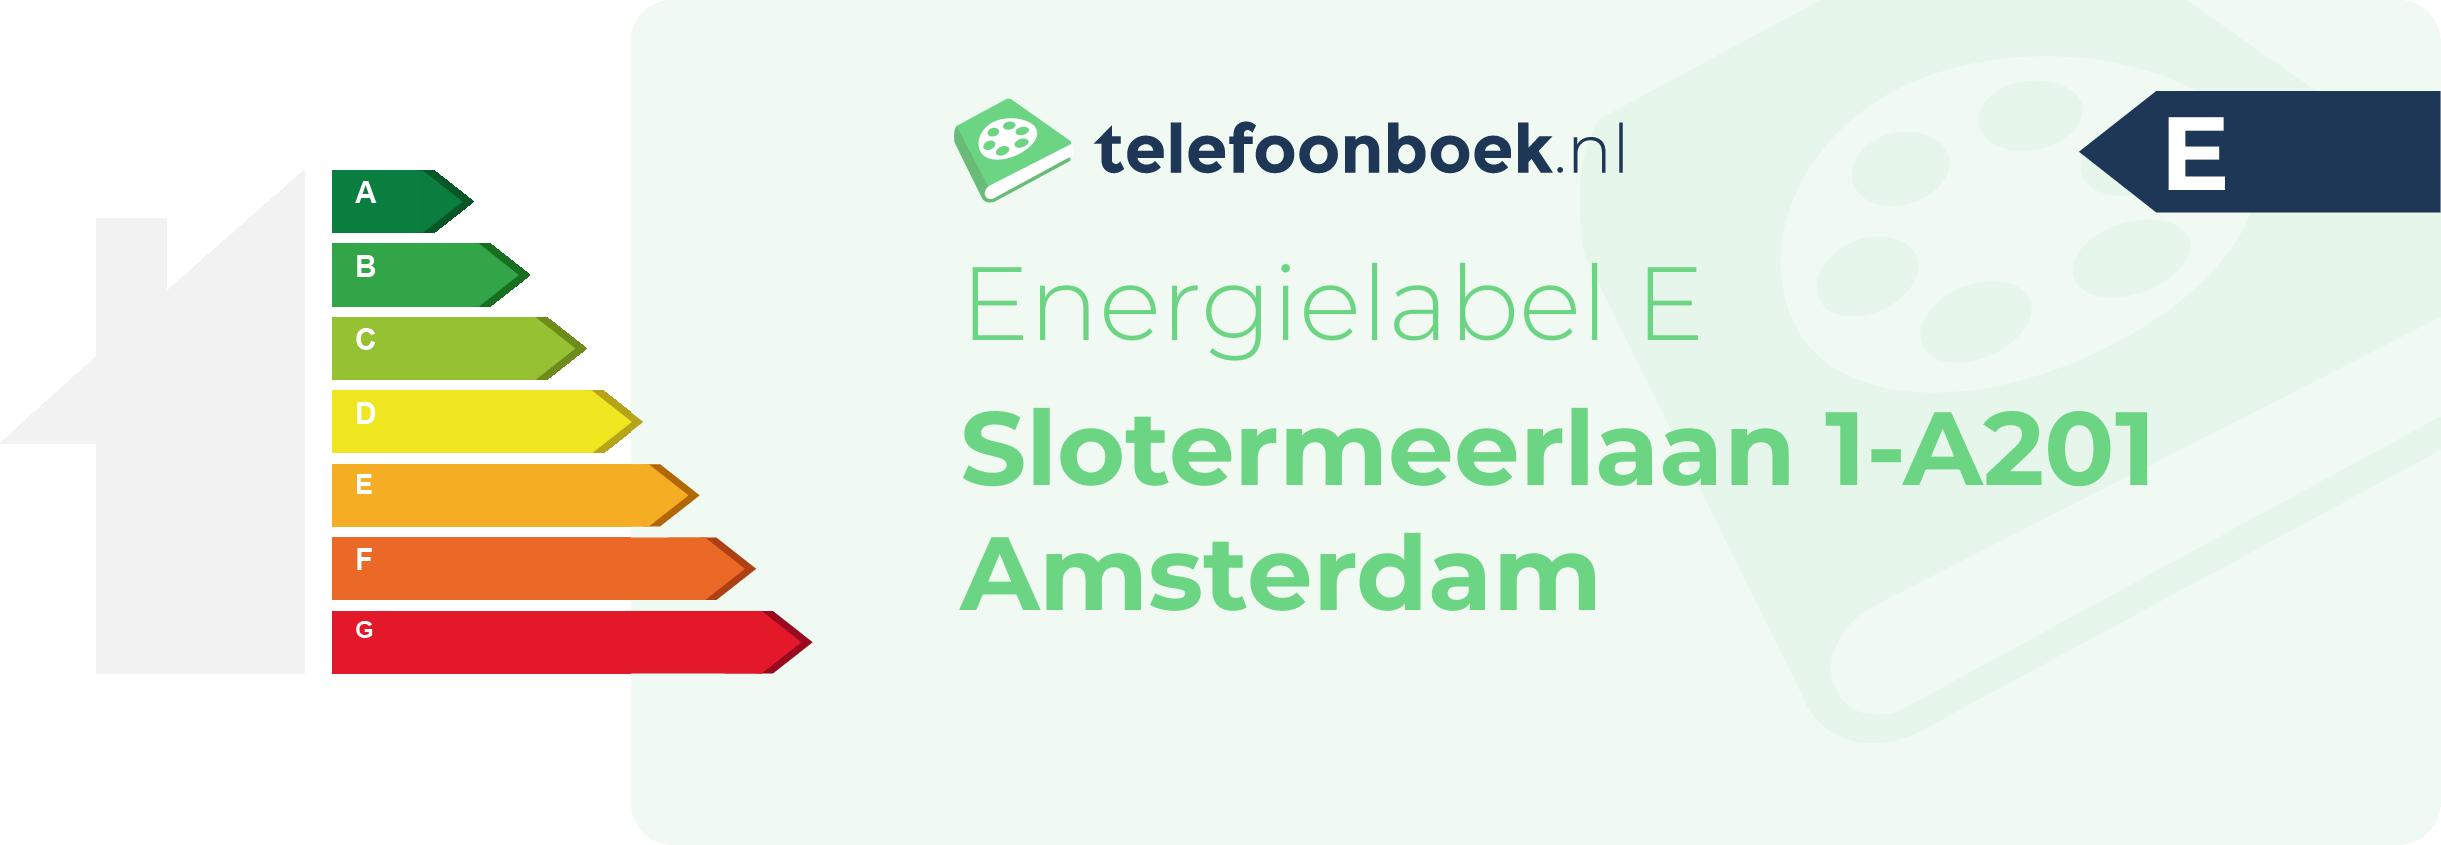 Energielabel Slotermeerlaan 1-A201 Amsterdam